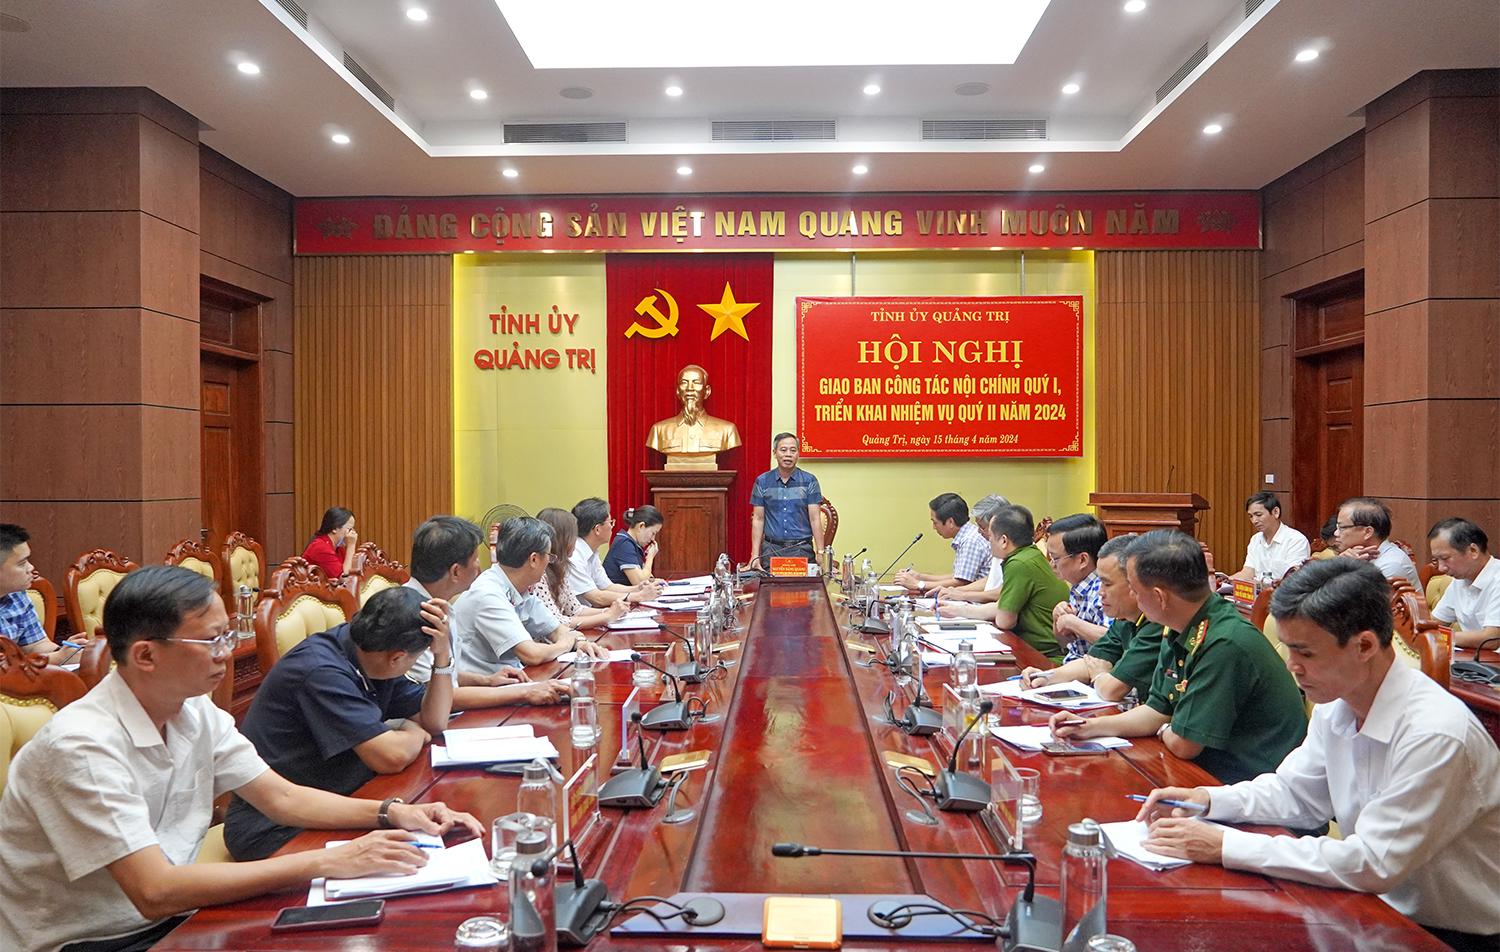 Hội nghị giao ban công tác nội chính quý I, triển khai nhiệm vụ quý II/2024 của tỉnh Quảng Trị